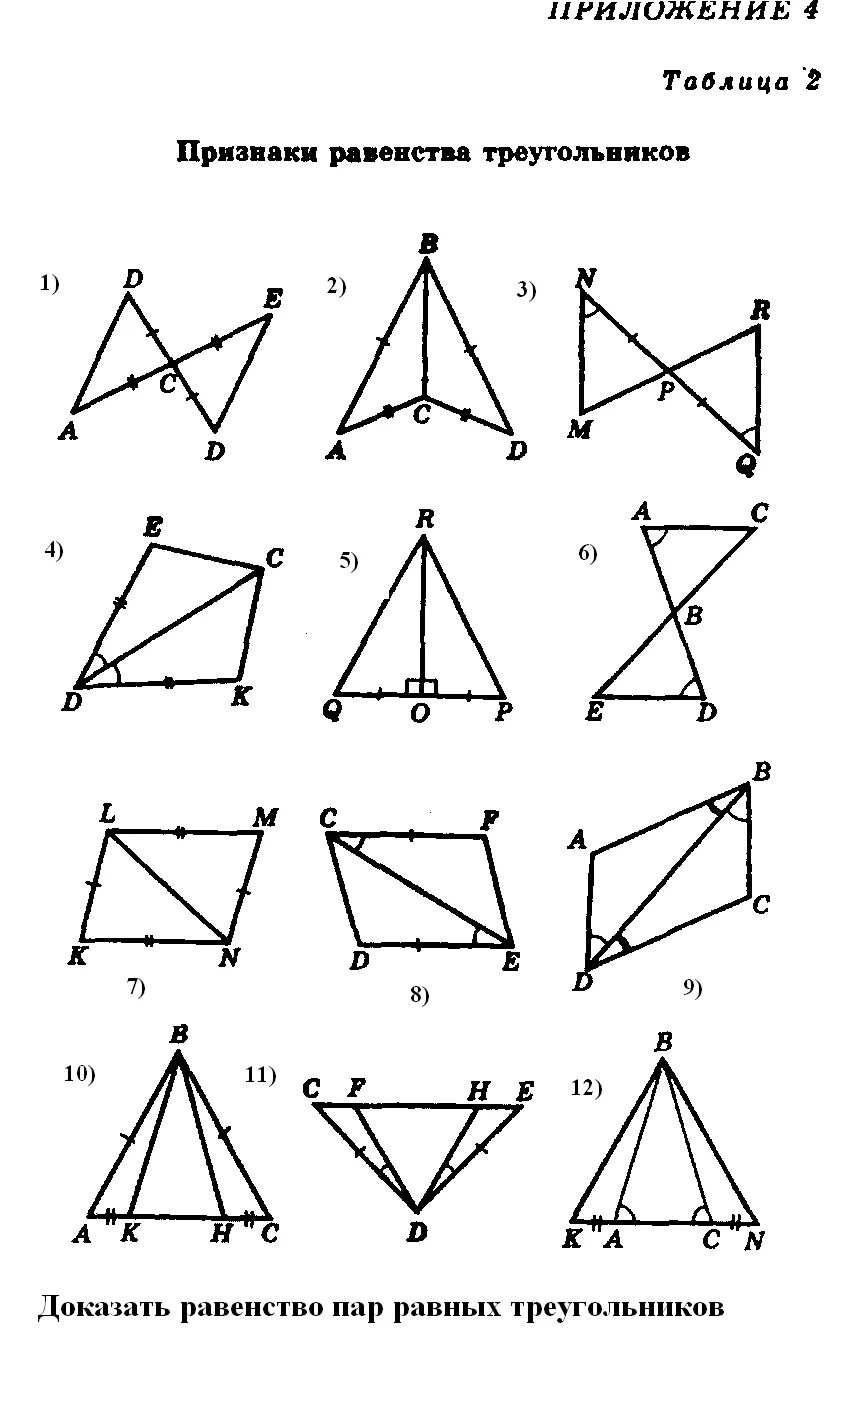 3 признаки равенства треугольников задачи. Задачи на признаки равенства треугольников 7 класс. 2 Признак равенства треугольников задачи. Признаки равенства треугольников задачи. Задачи на равенство треугольников 7.